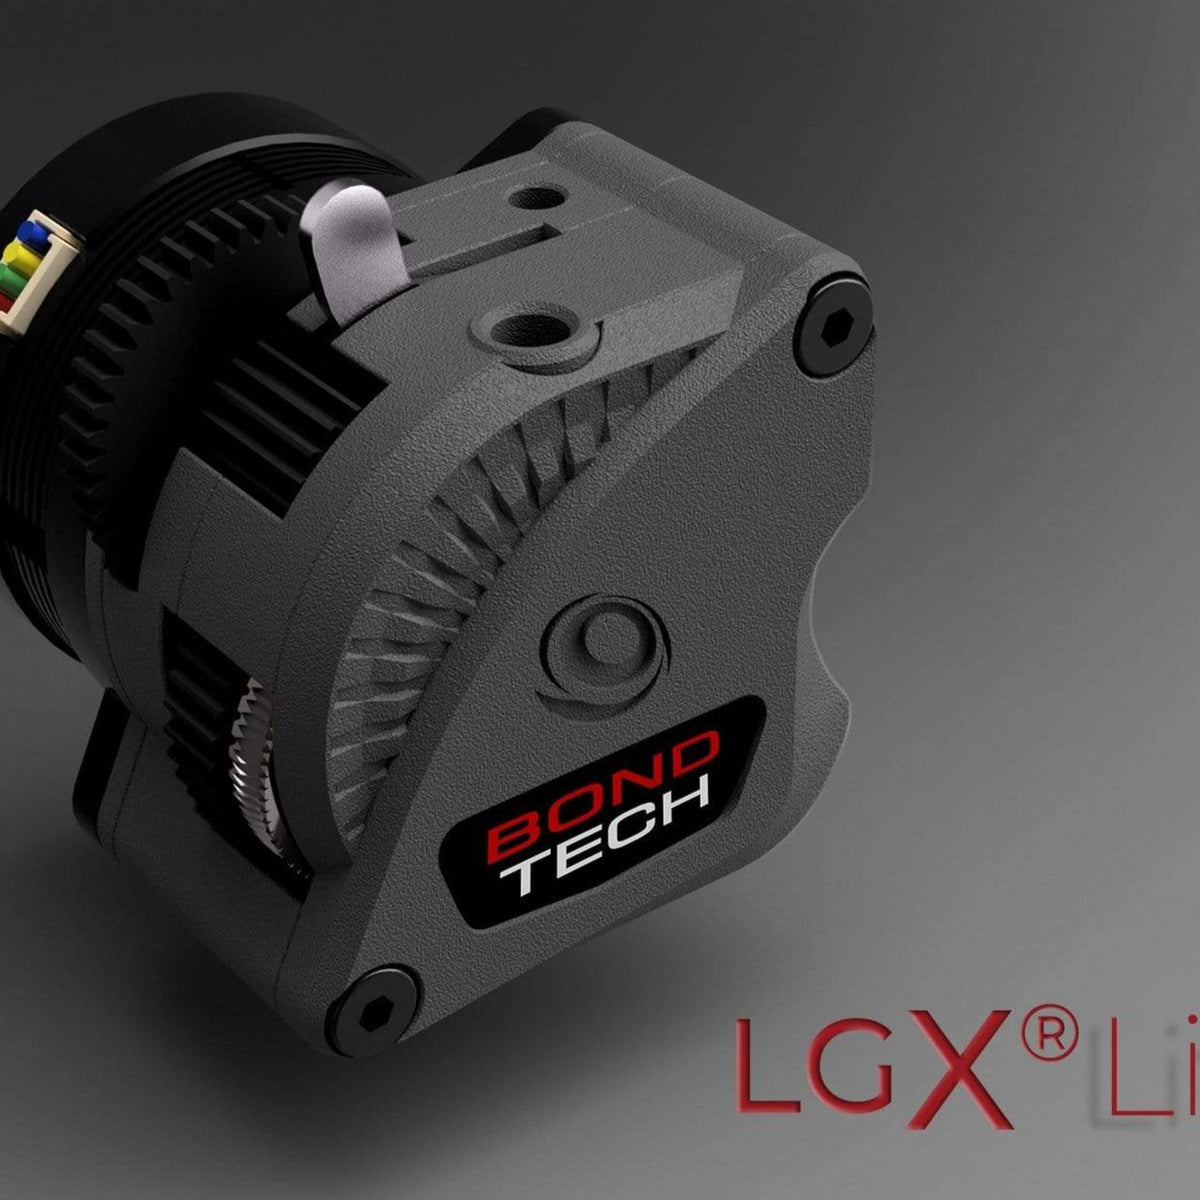 Bondtech LGX Large Gears eXtruder is smarter, smaller, lighter